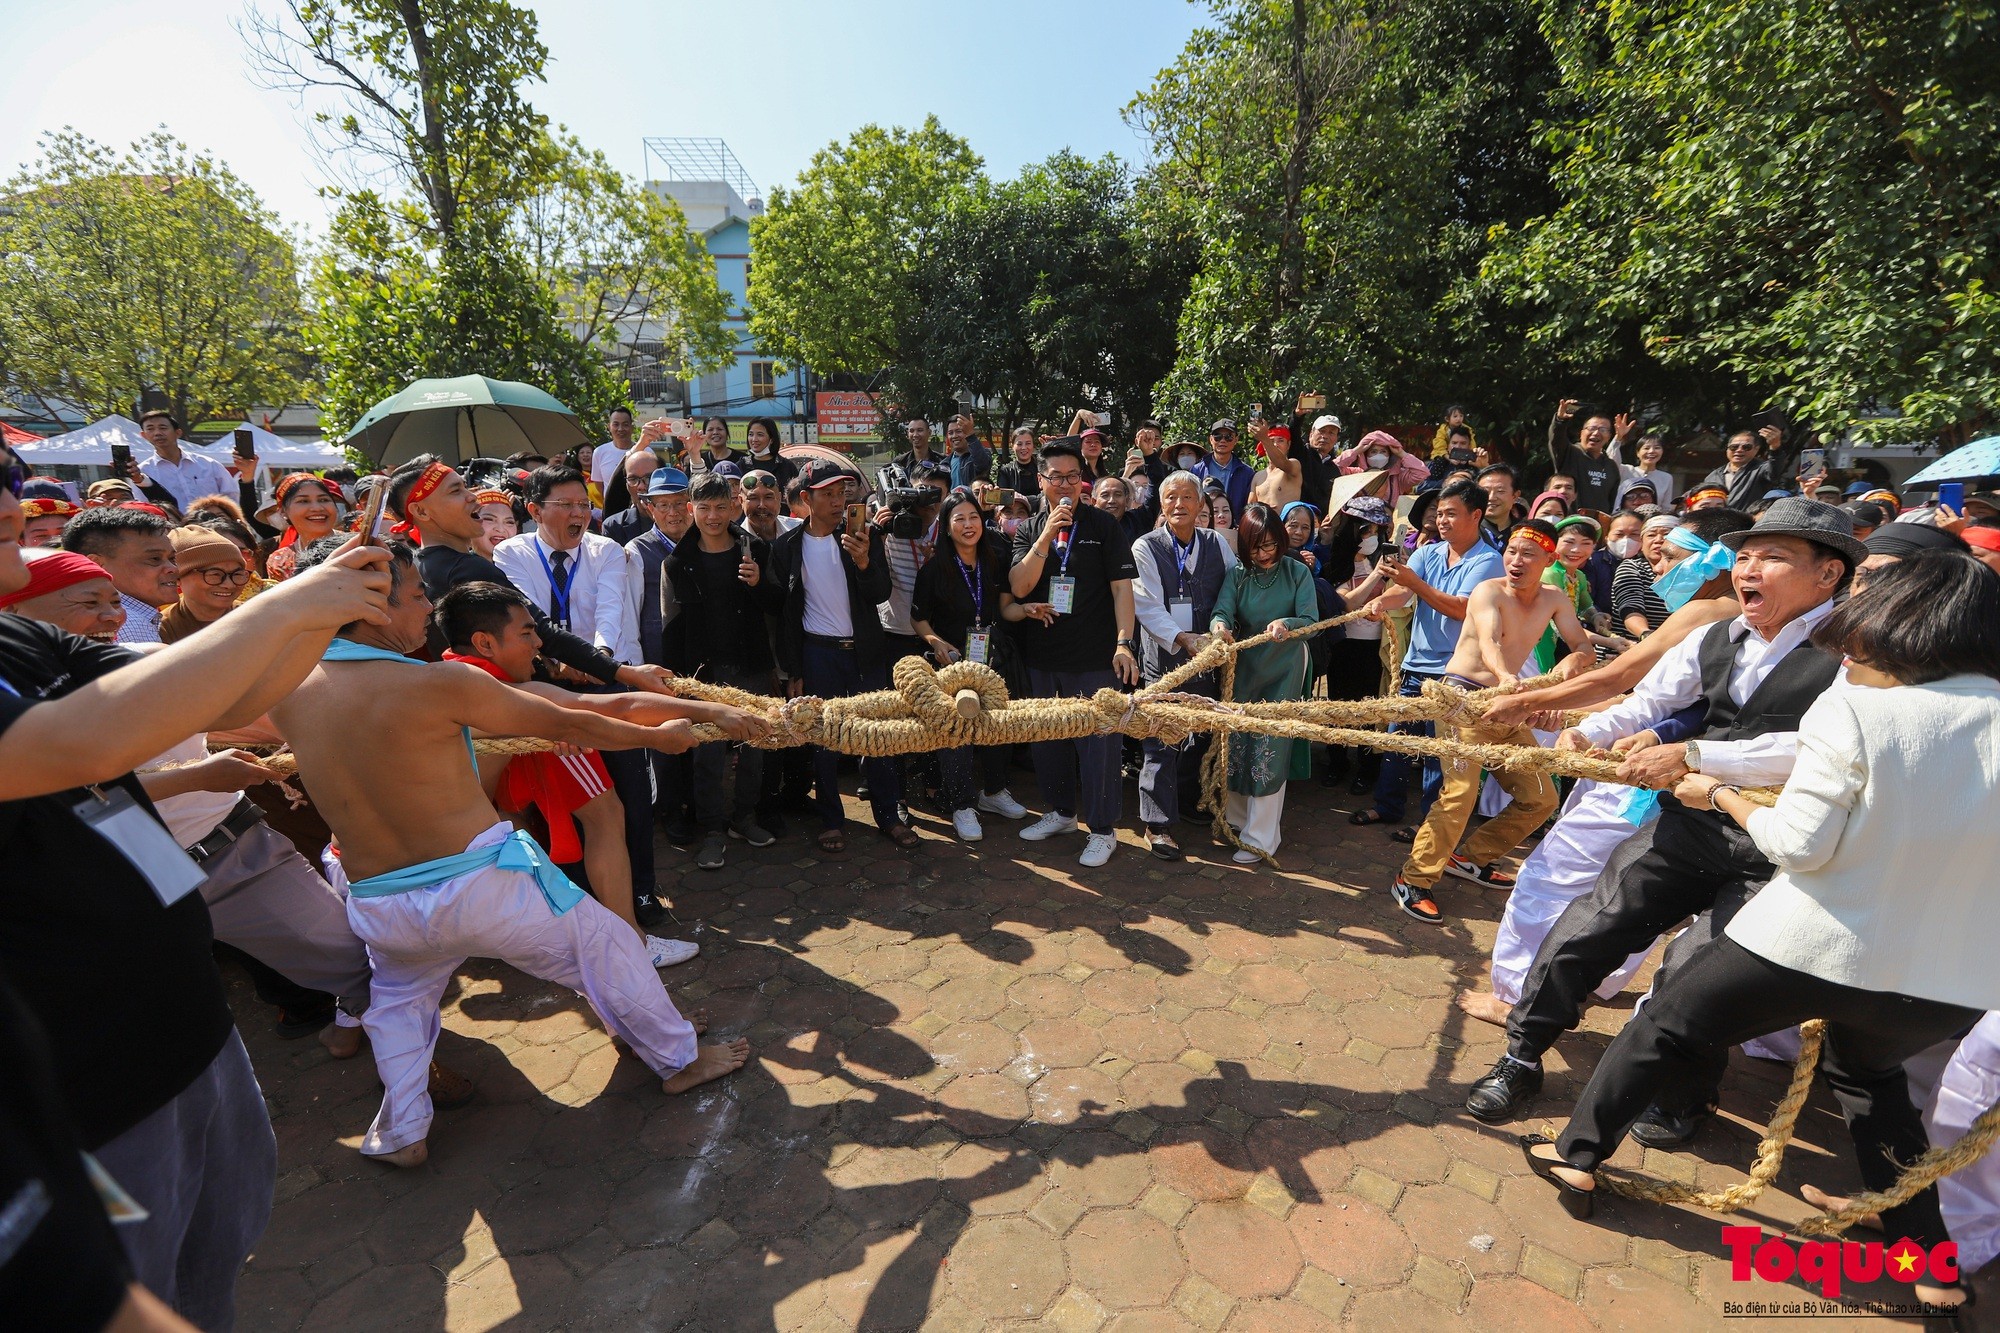 Tại lễ hội kéo co ở Hàn Quốc, dây kéo có thể dài tới 200m, nặng tới 40 tấn và tất cả mọi người có mặt đều có thể tham gia kéo co, tạo sự gắn kết cộng đồng. (Ảnh: Tổ quốc)